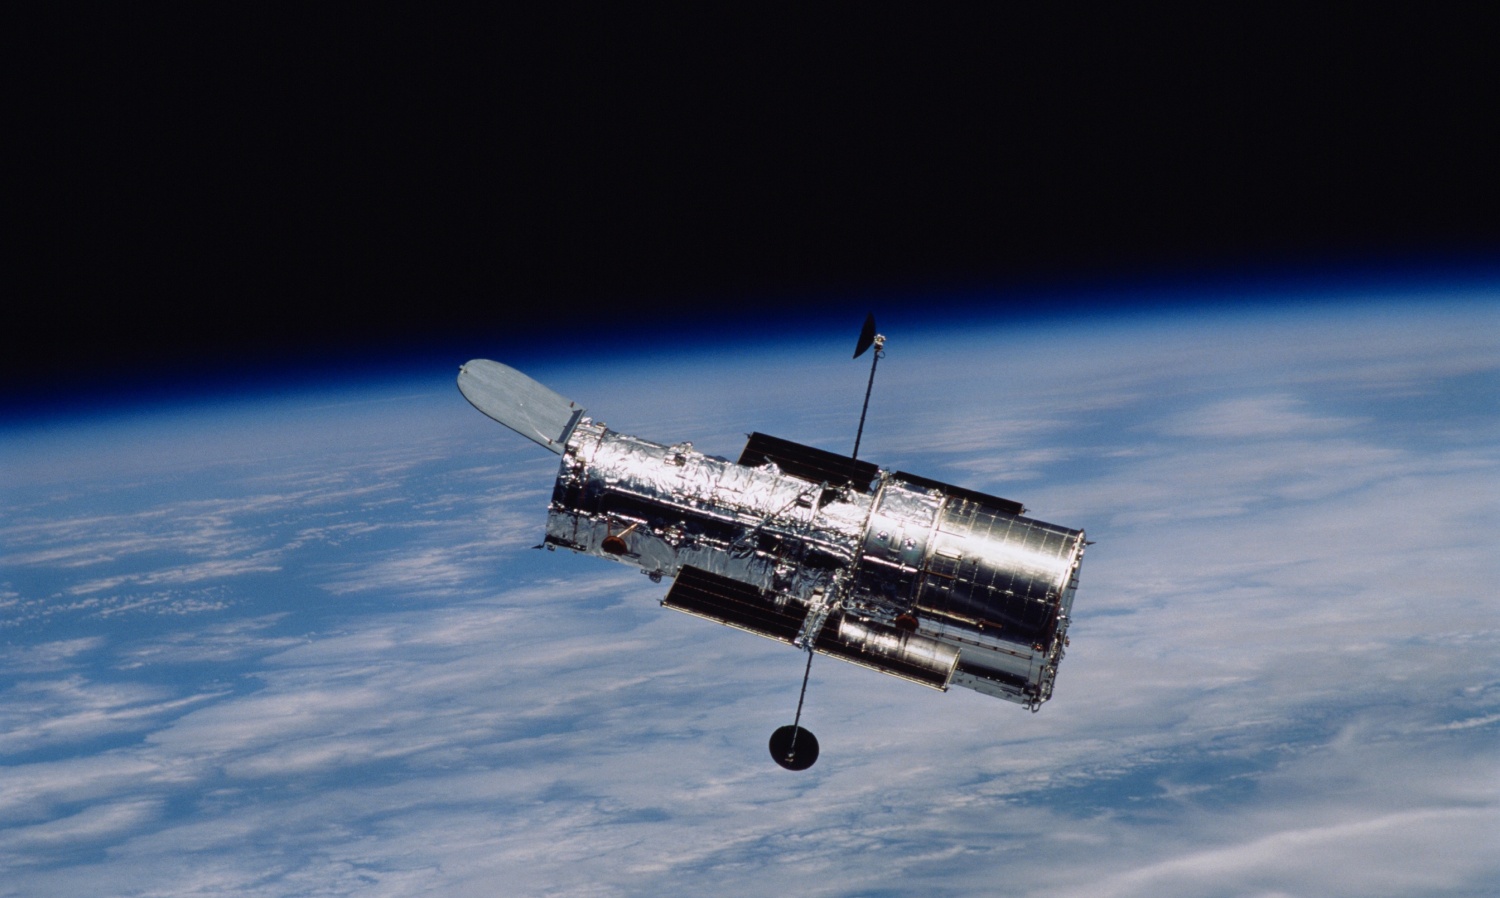 Scoperte del telescopio spaziale Hubble: l’era dell’universo, la luna di Plutone e altro